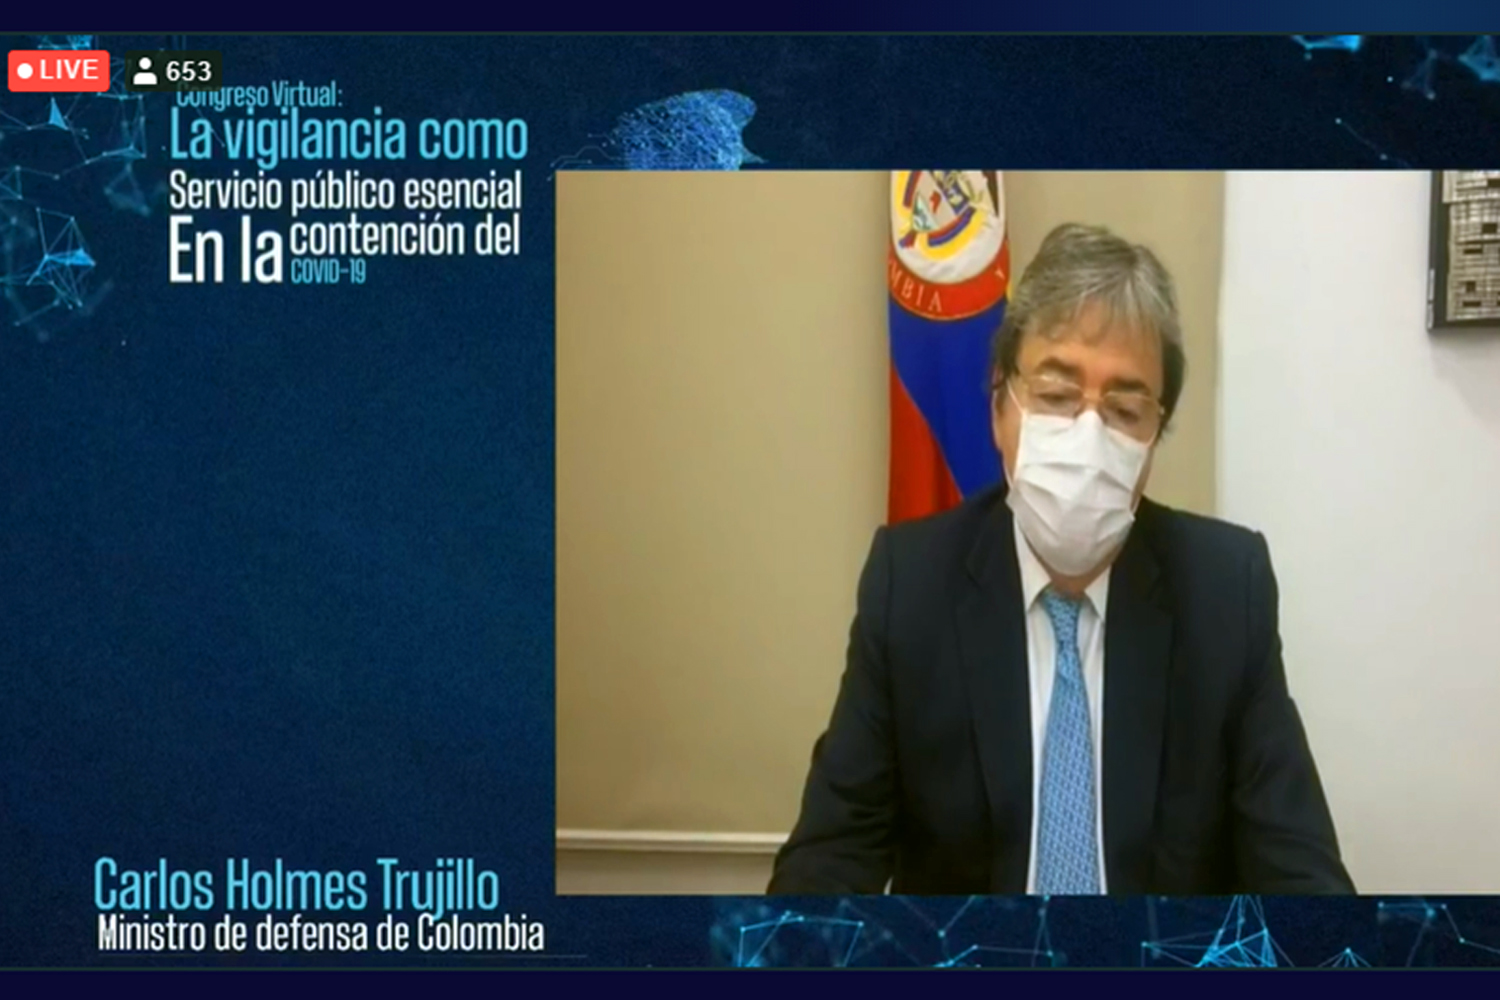 seguridad privada El ministro de Defensa colombiano Carlos Holmes Trujillo en el congreso virtual de ECOS